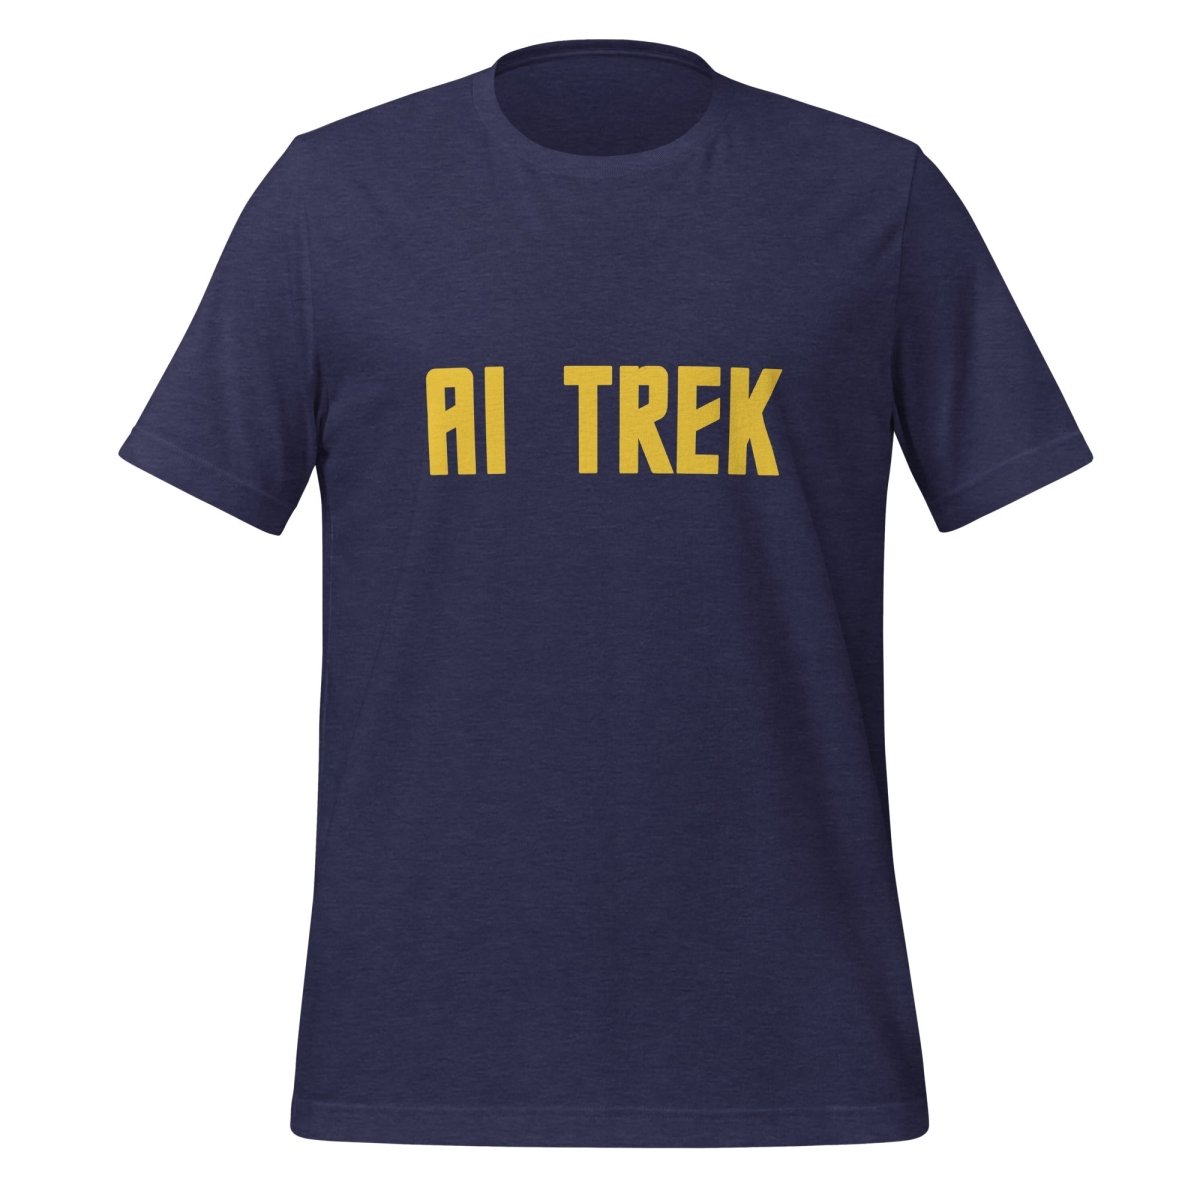 AI TREK T - Shirt (unisex) - Heather Midnight Navy - AI Store